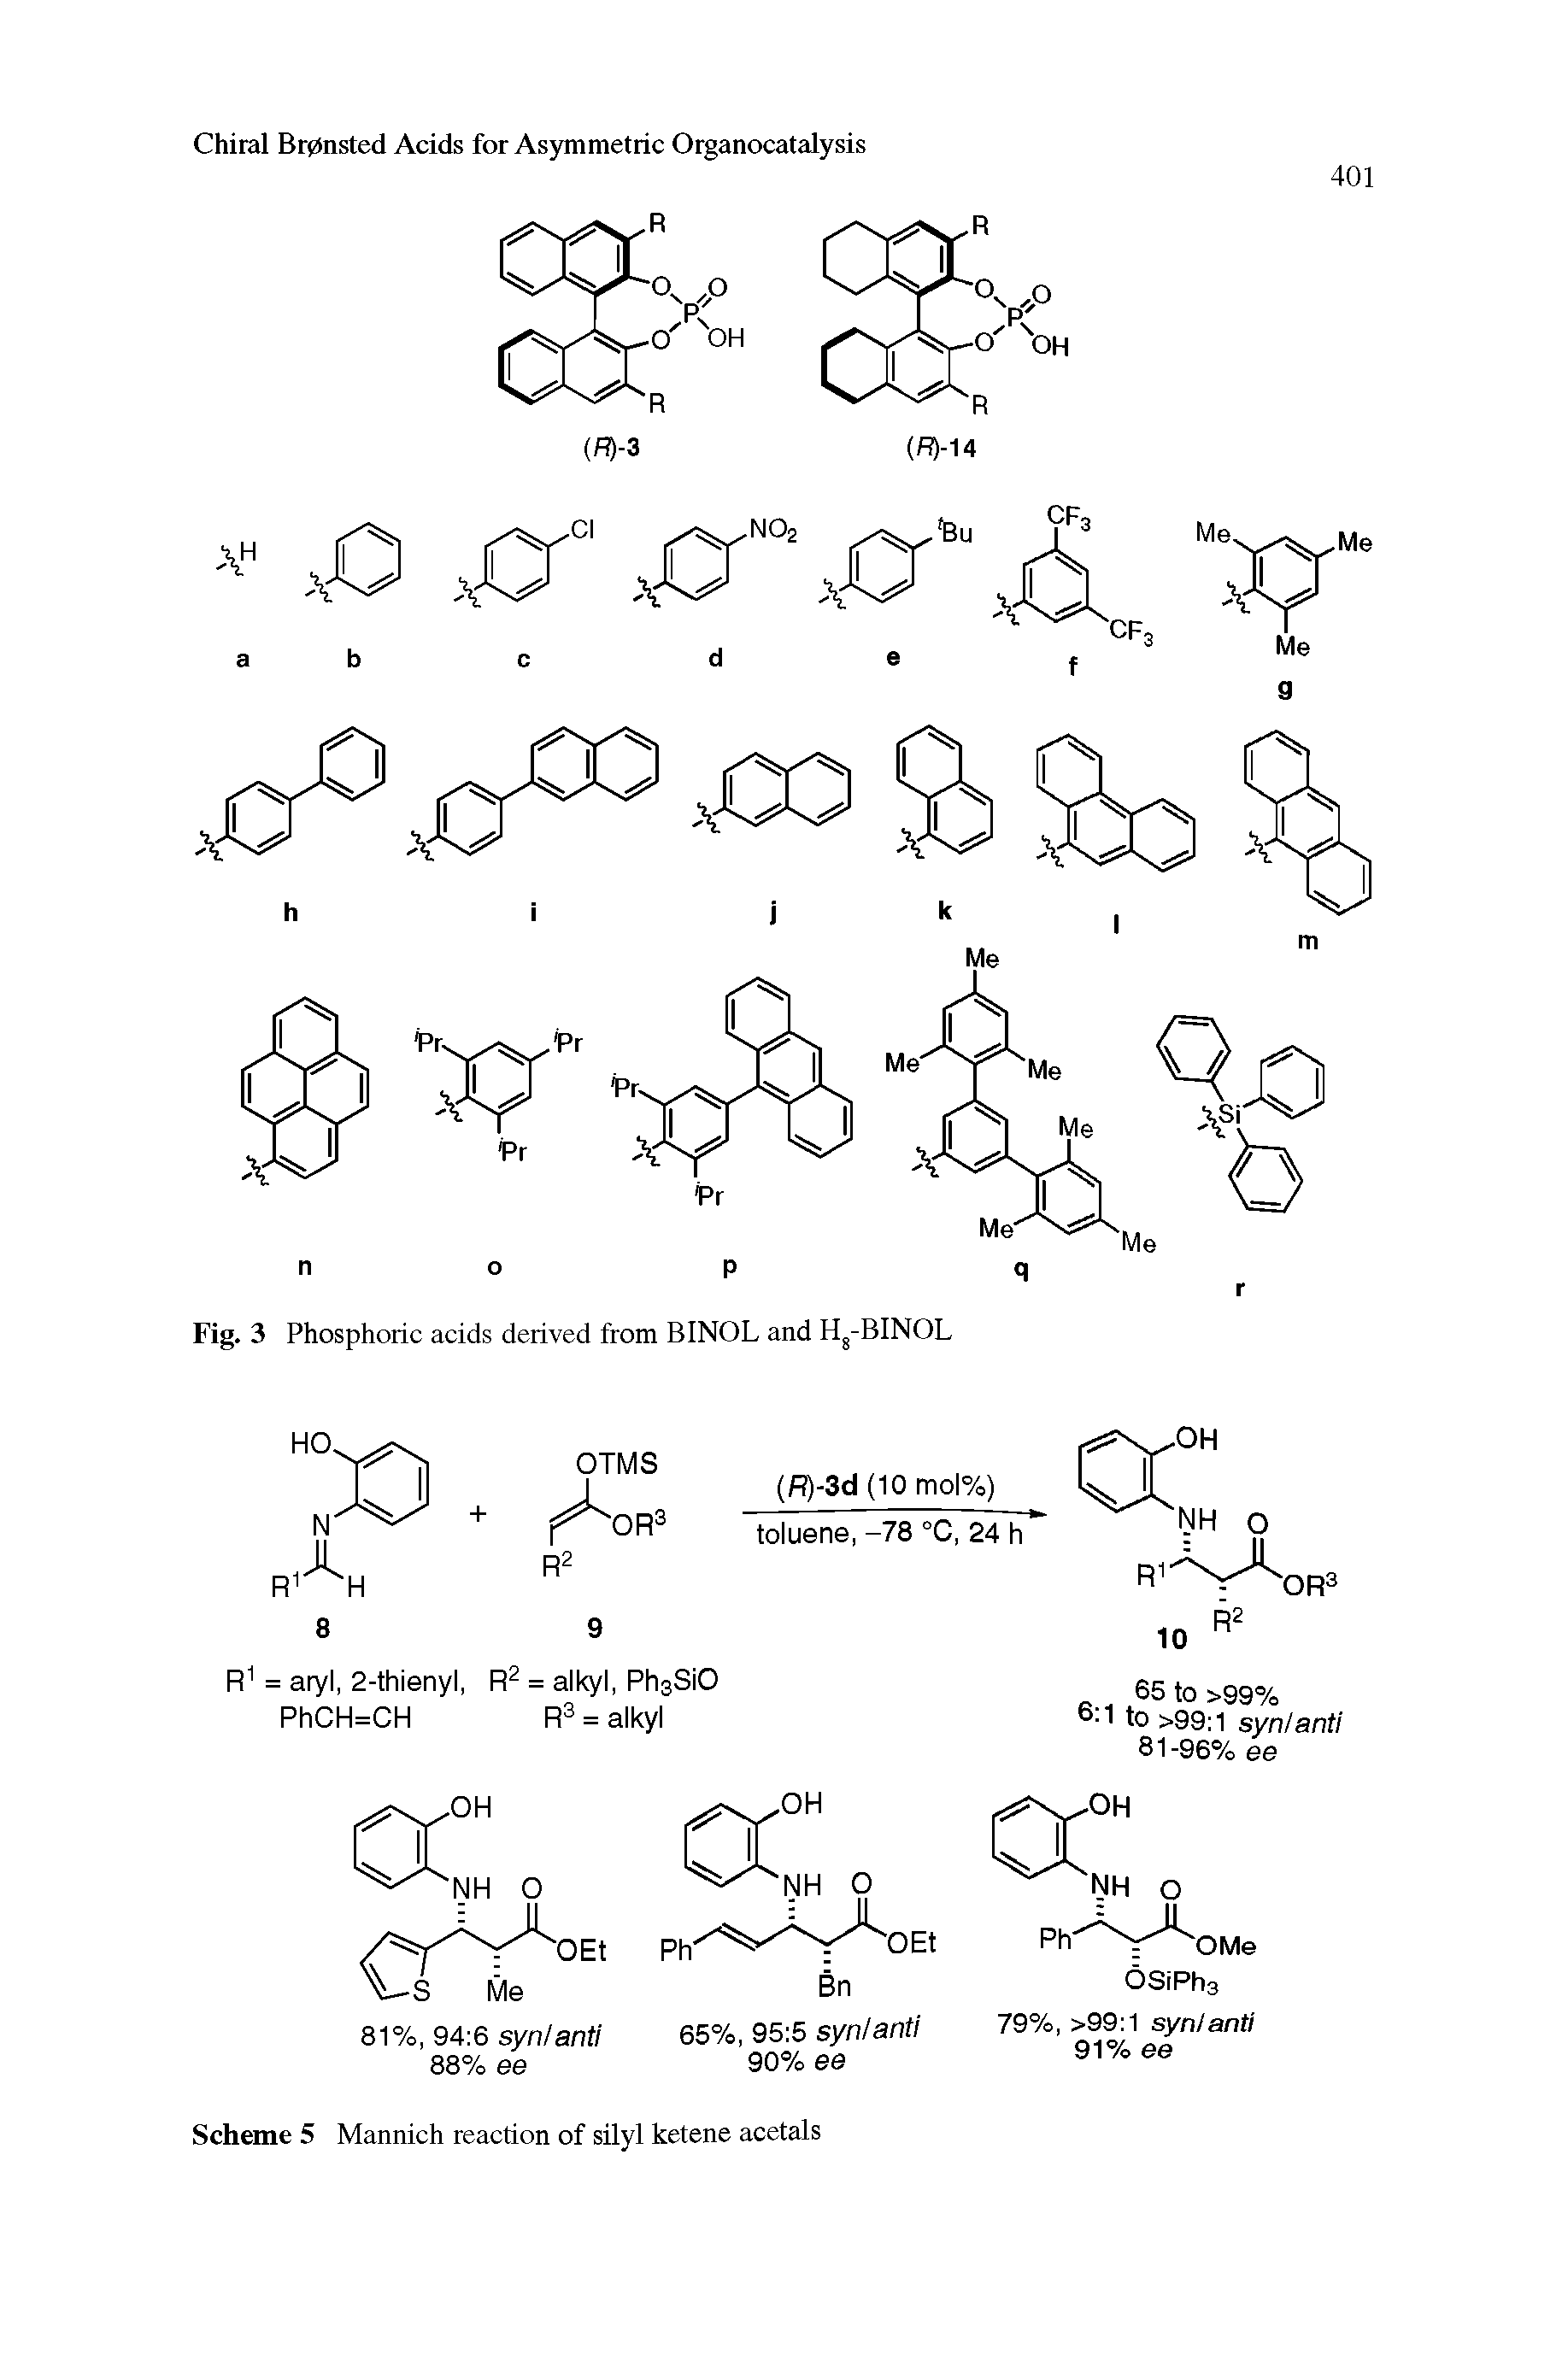 Scheme 5 Mannich reaction of silyl ketene acetals...